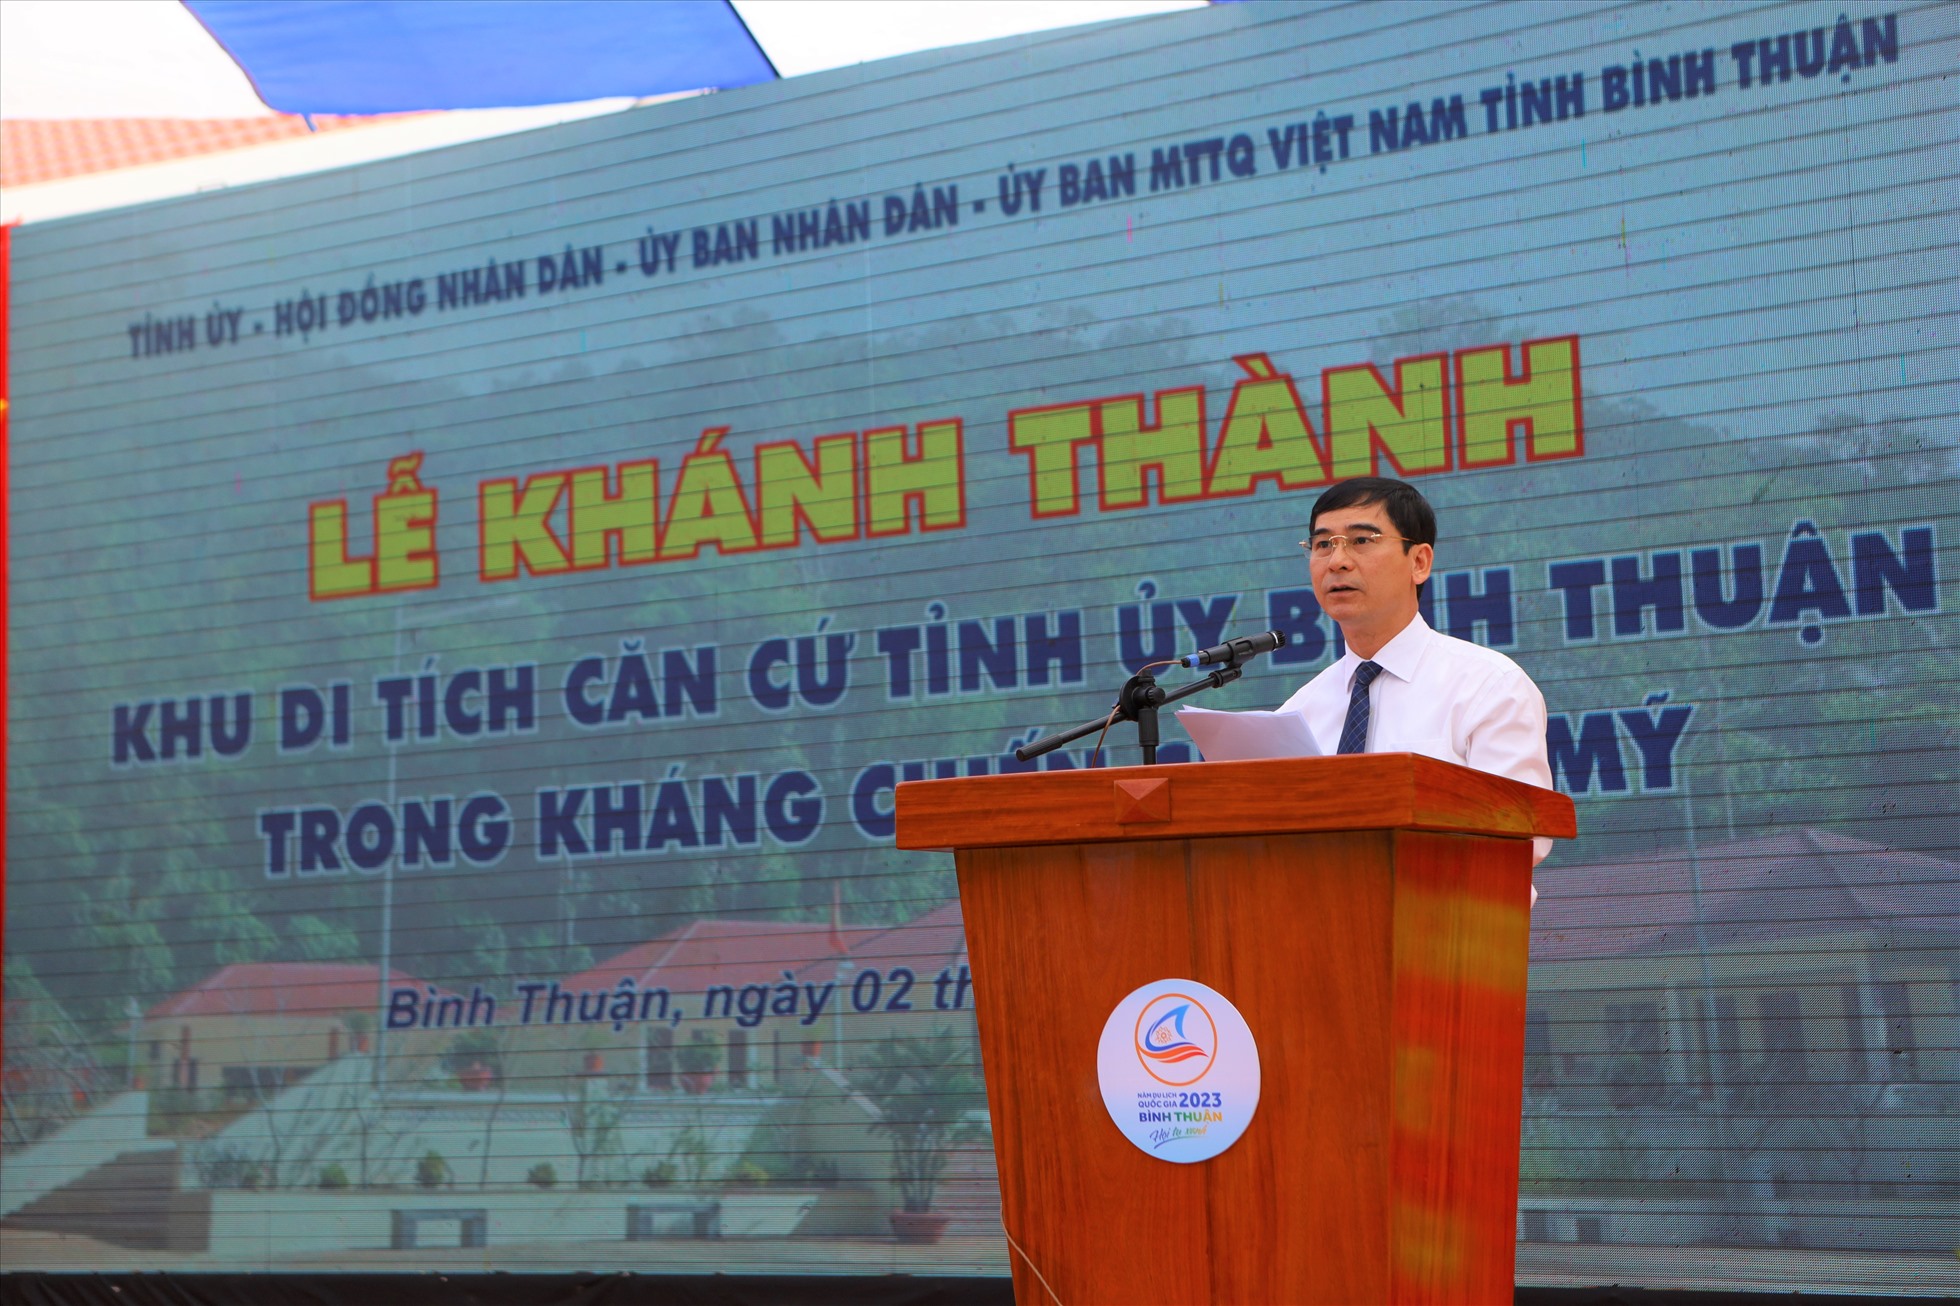 Ông Dương Văn An, Bí thư Tỉnh ủy Bình Thuận phát biểu tại lễ khánh thành Khu di tích căn cứ Tỉnh ủy Bình Thuận trong kháng chiến chống Mỹ. Ảnh: Duy Tuấn